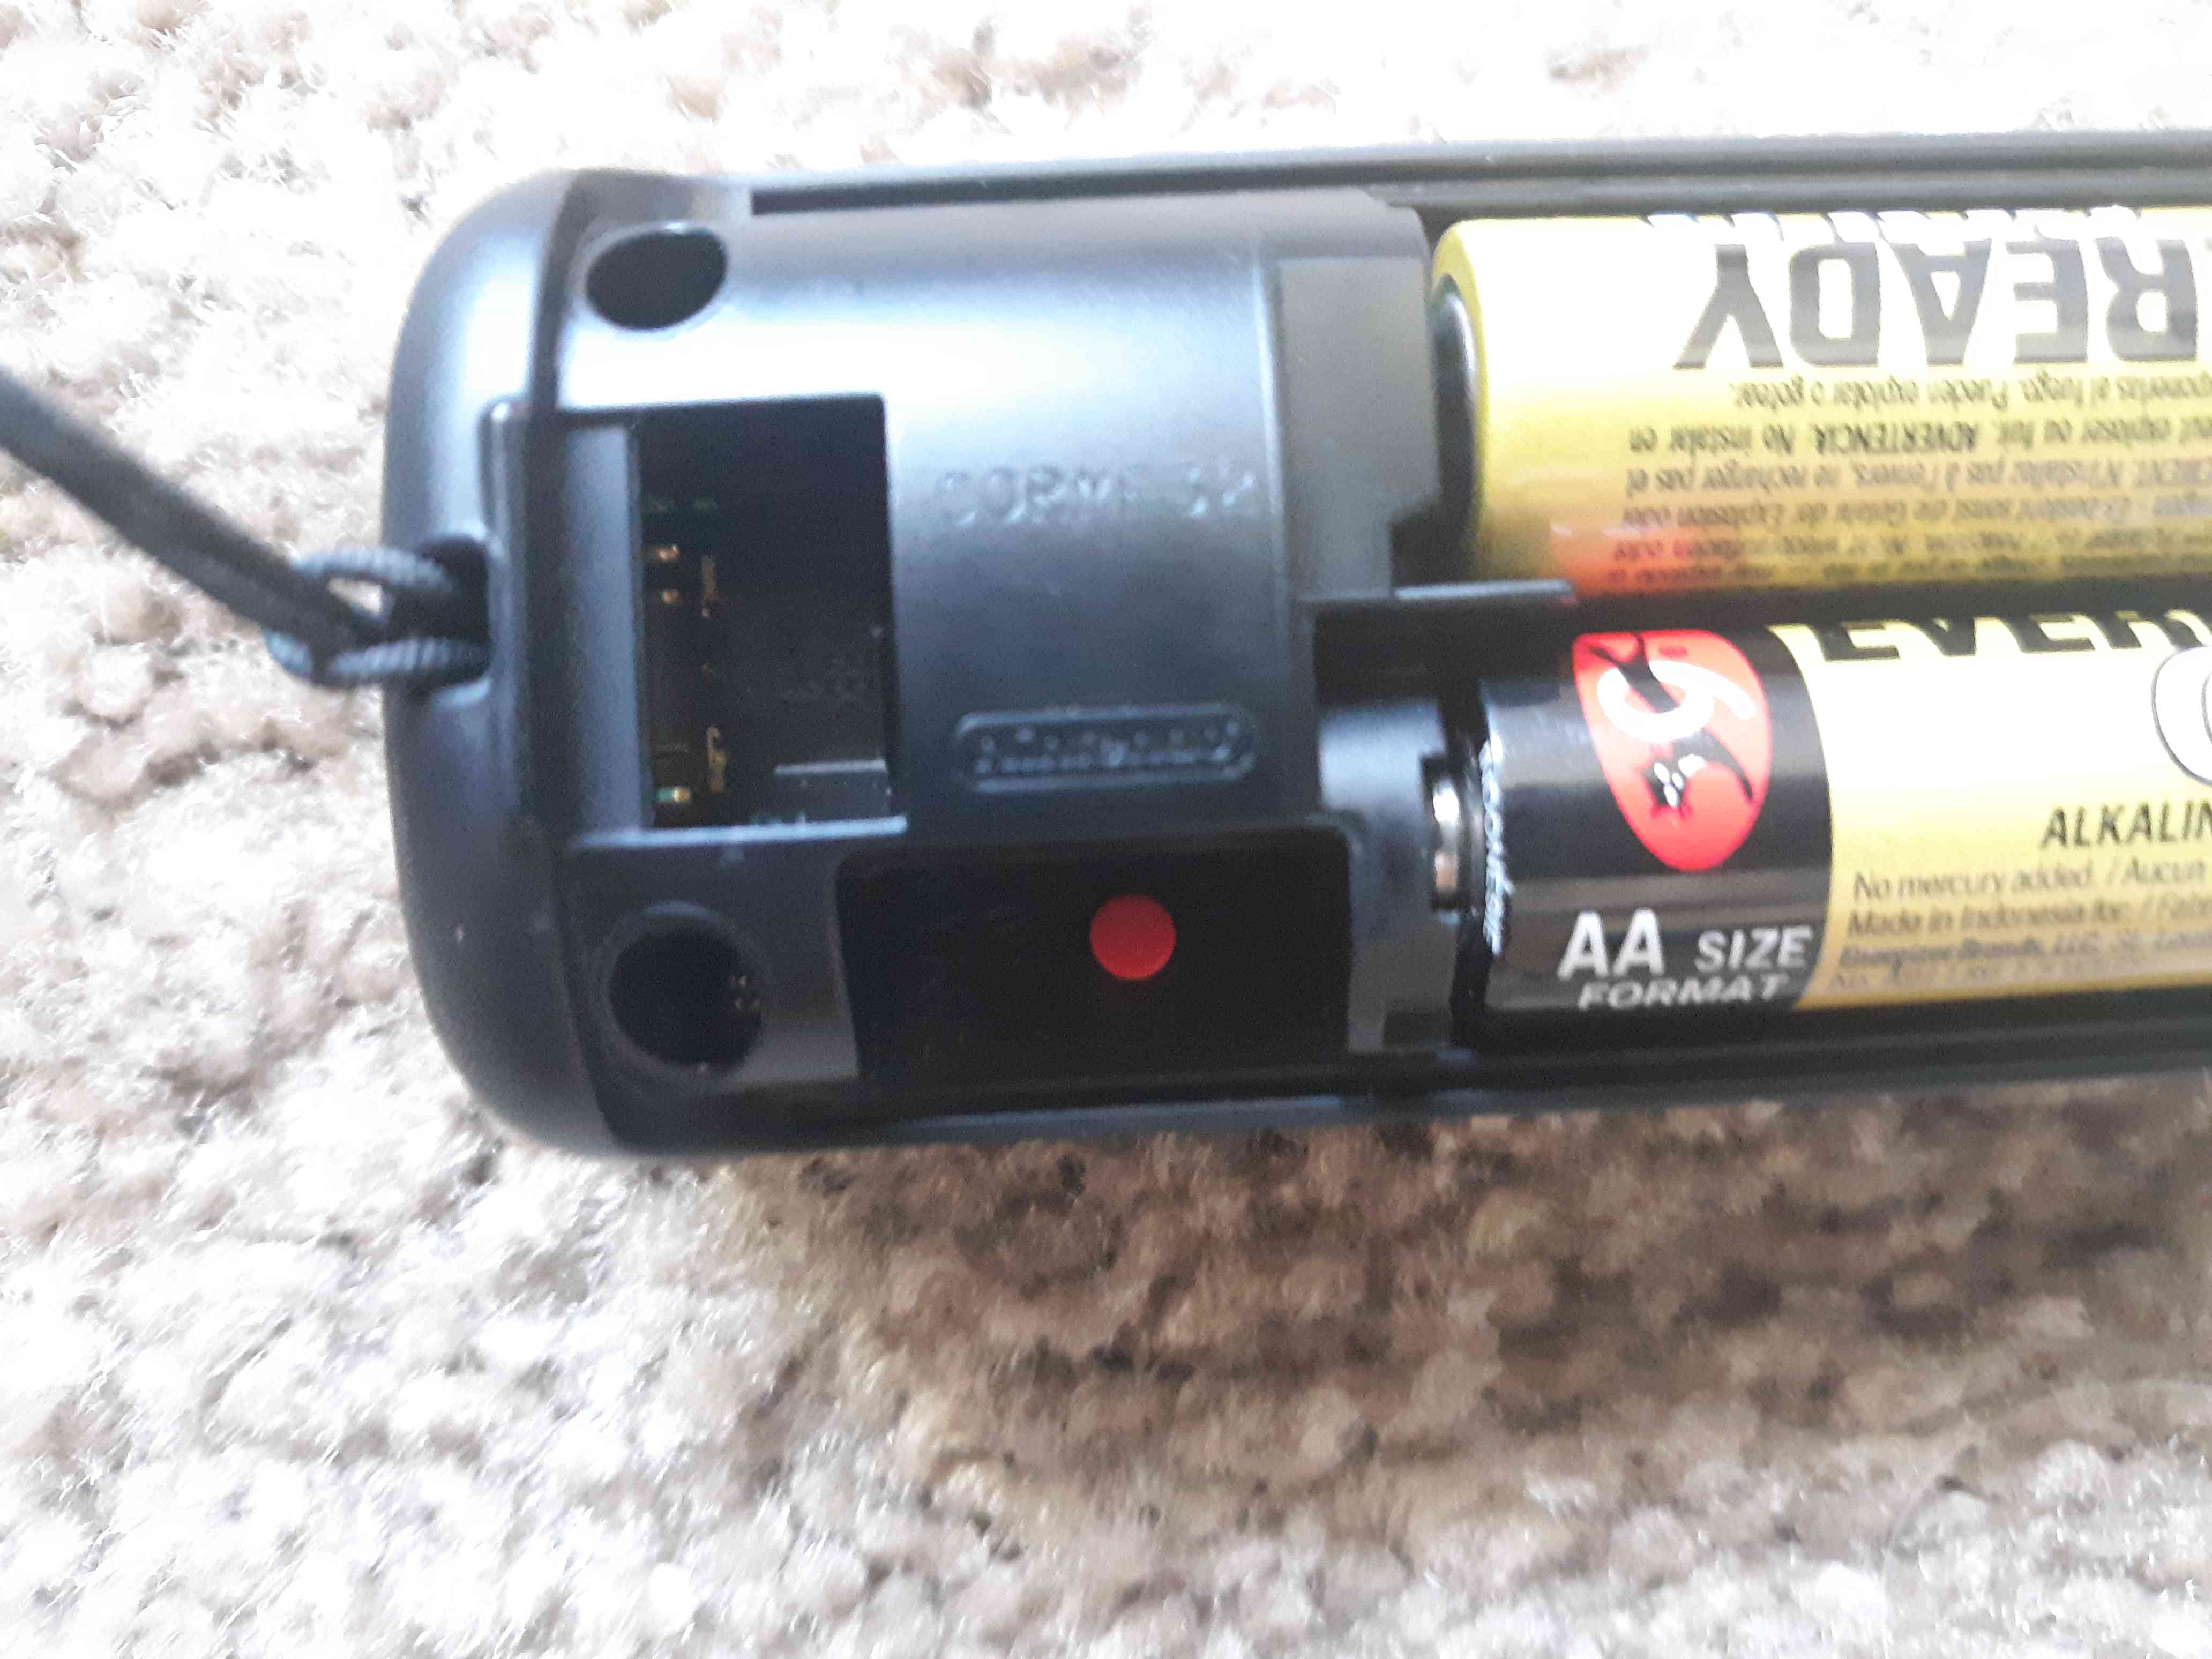 Den röda synkroniseringsknappen är under batterierna på baksidan av Wii-fjärrkontrollen.